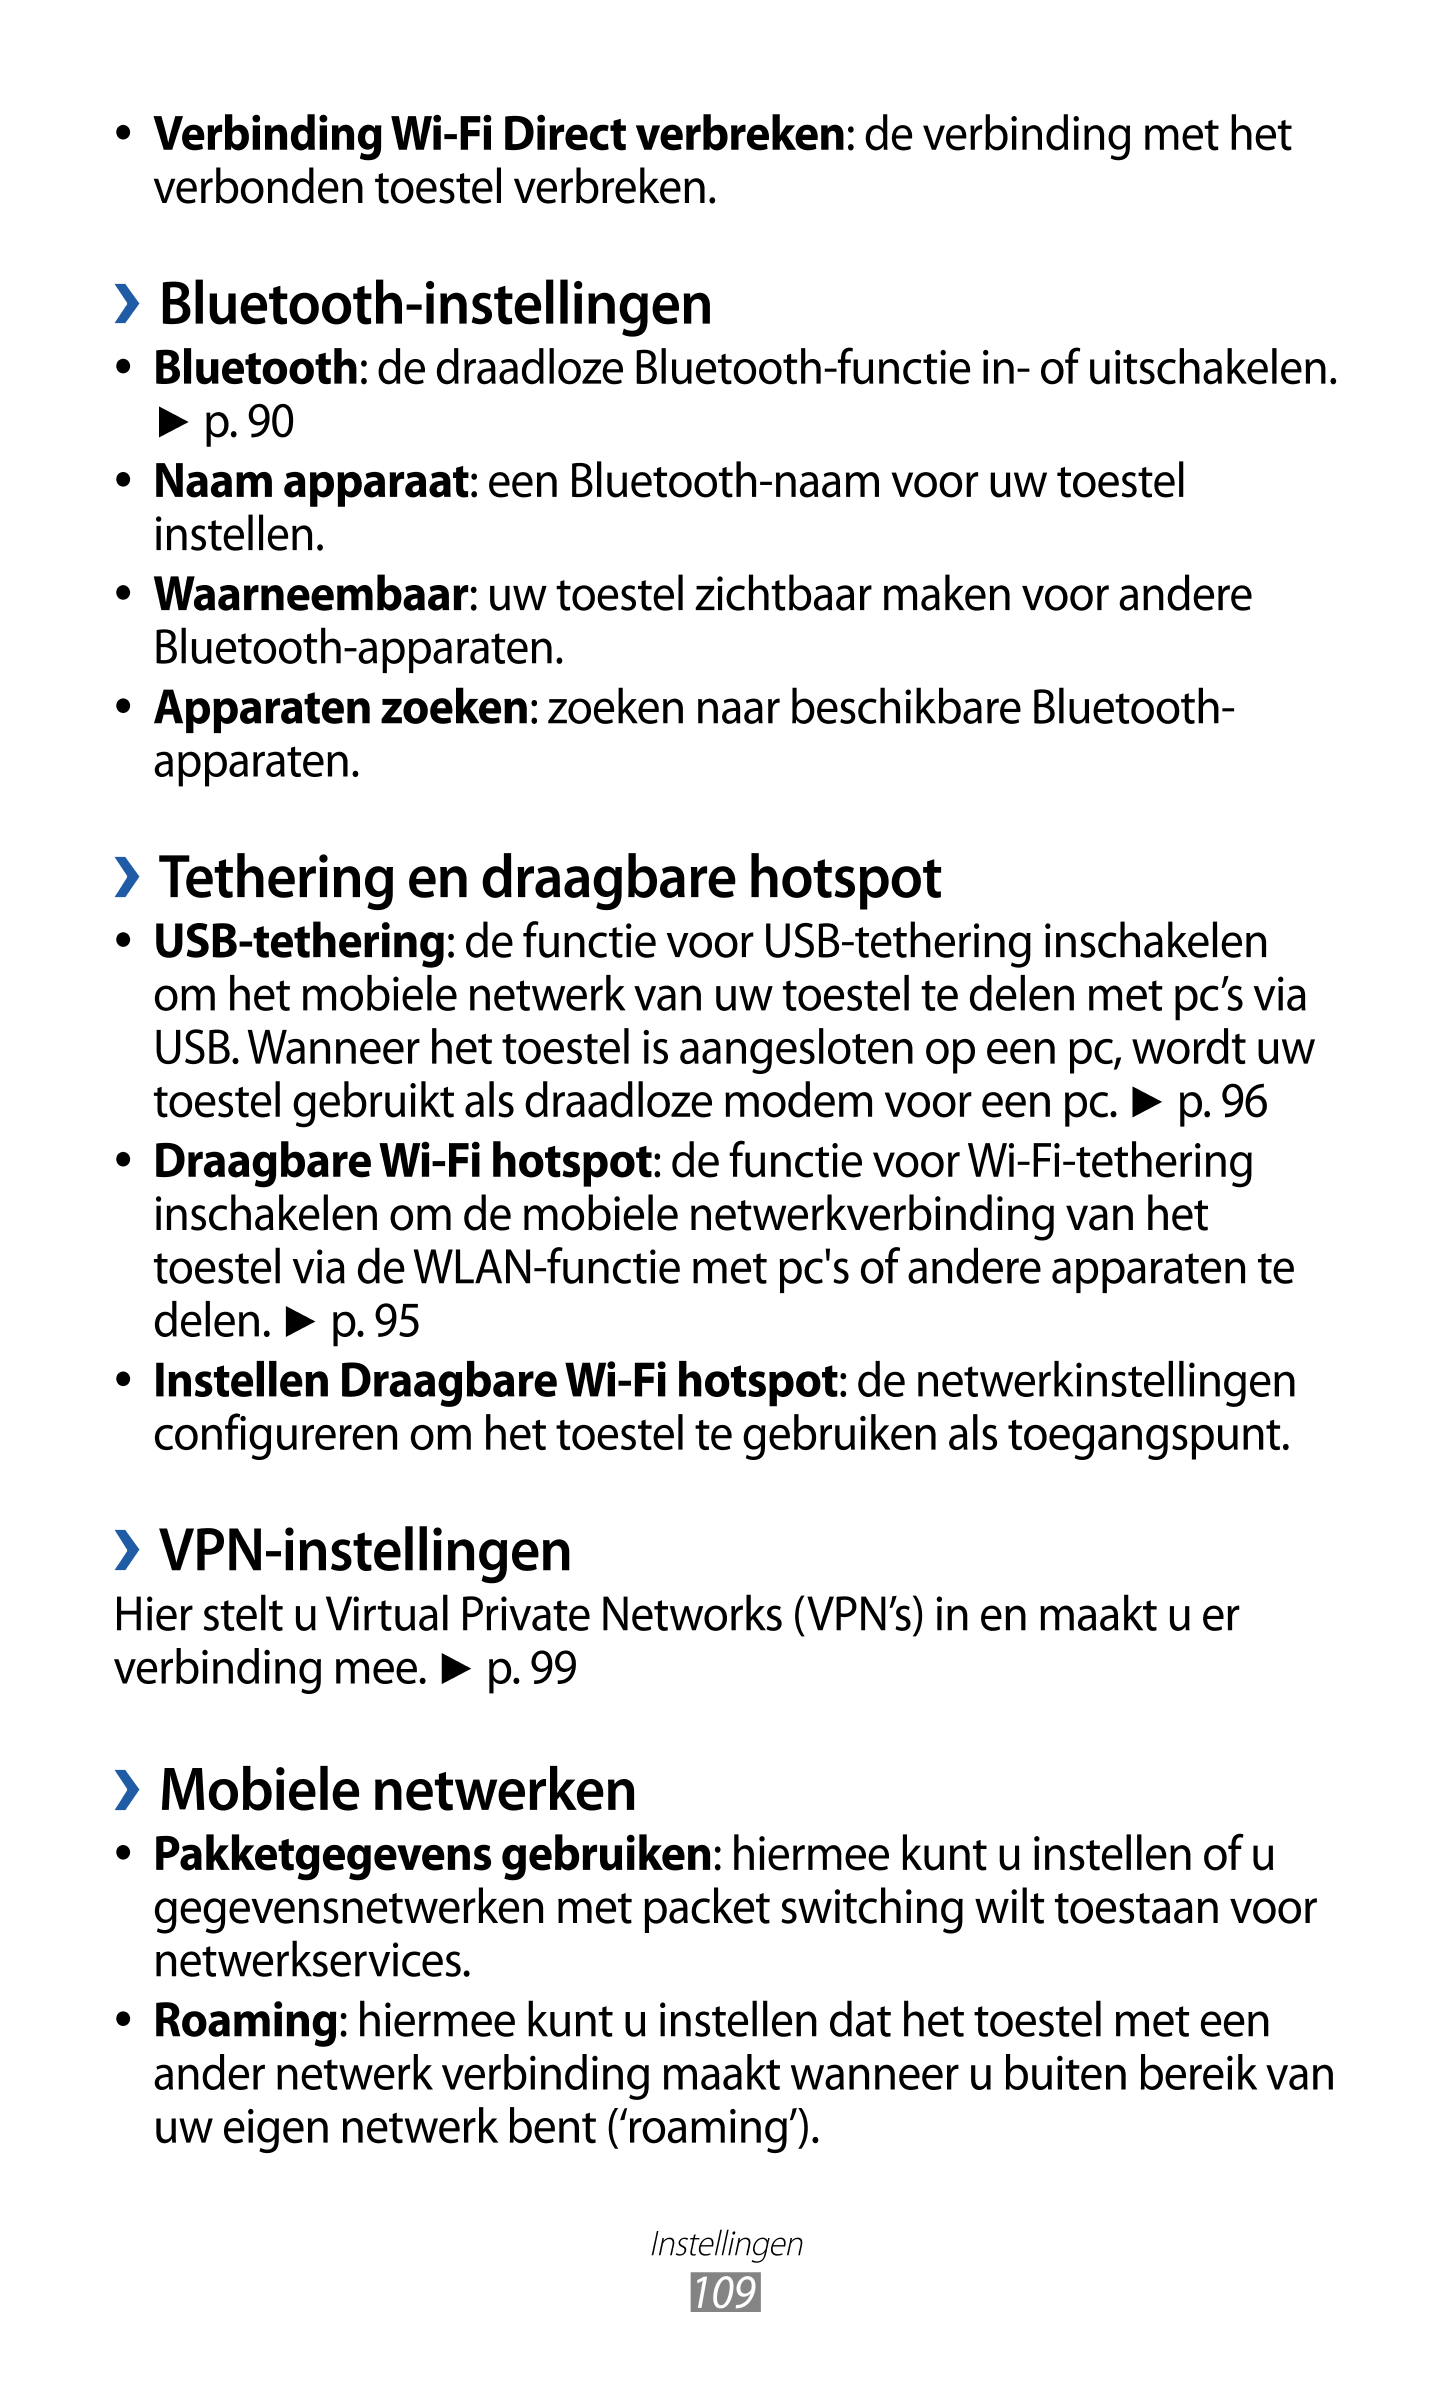   Verbinding Wi-Fi Direct verbreken: de verbinding met het 
verbonden toestel verbreken.
  Bluetooth-instellingen
  Bluetooth: d